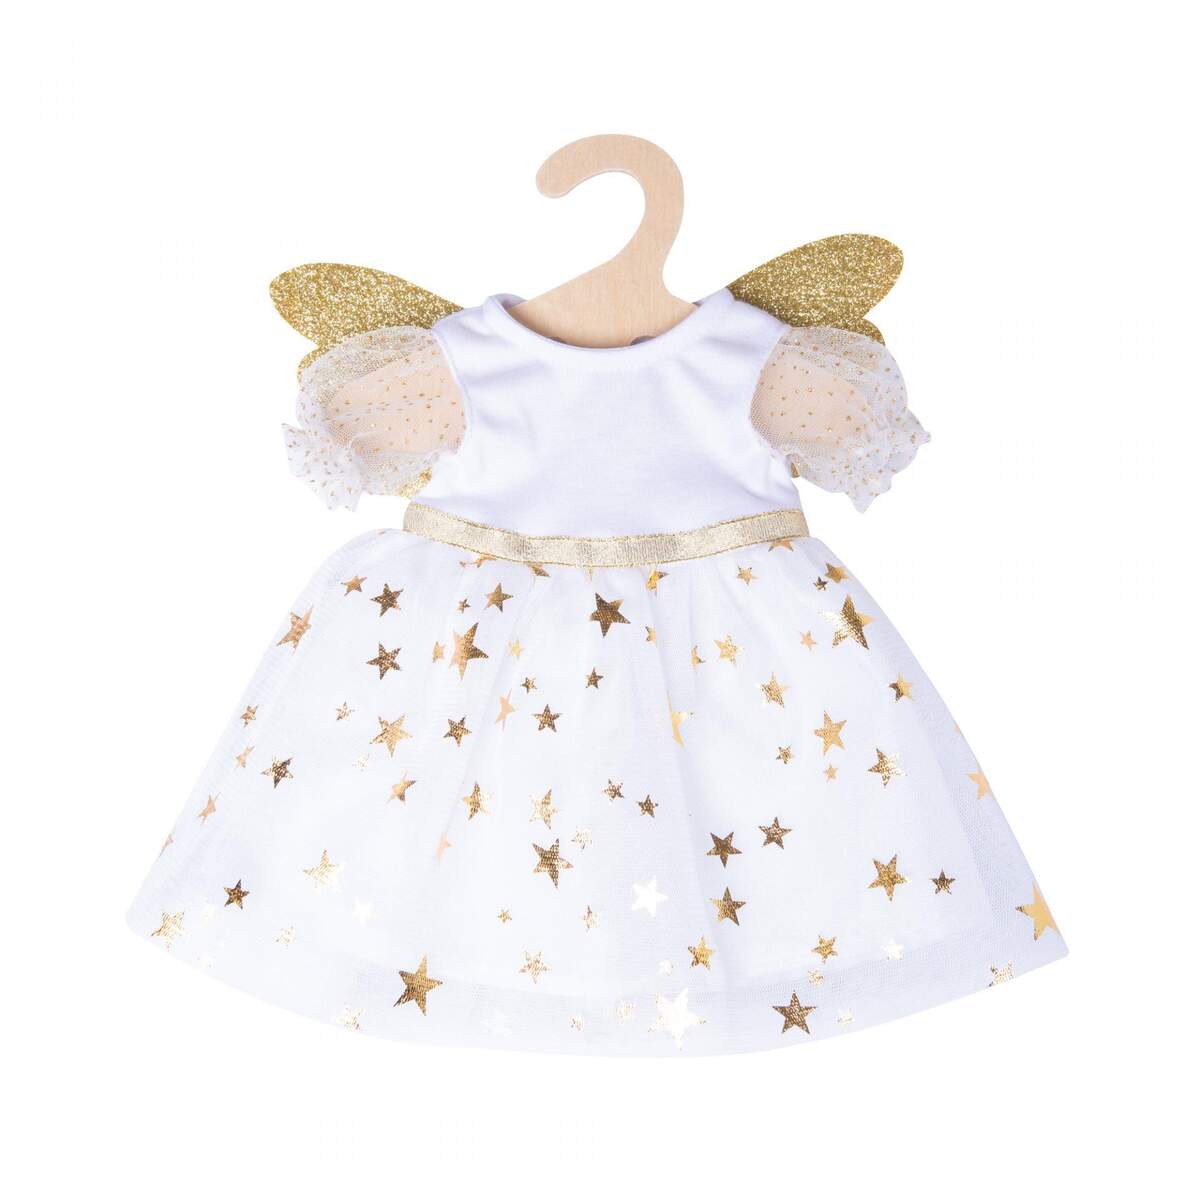 Heless 2152 - Kleid für Puppen im Design Schutzengel, mit goldenen Flügeln und Sternen-Haarband